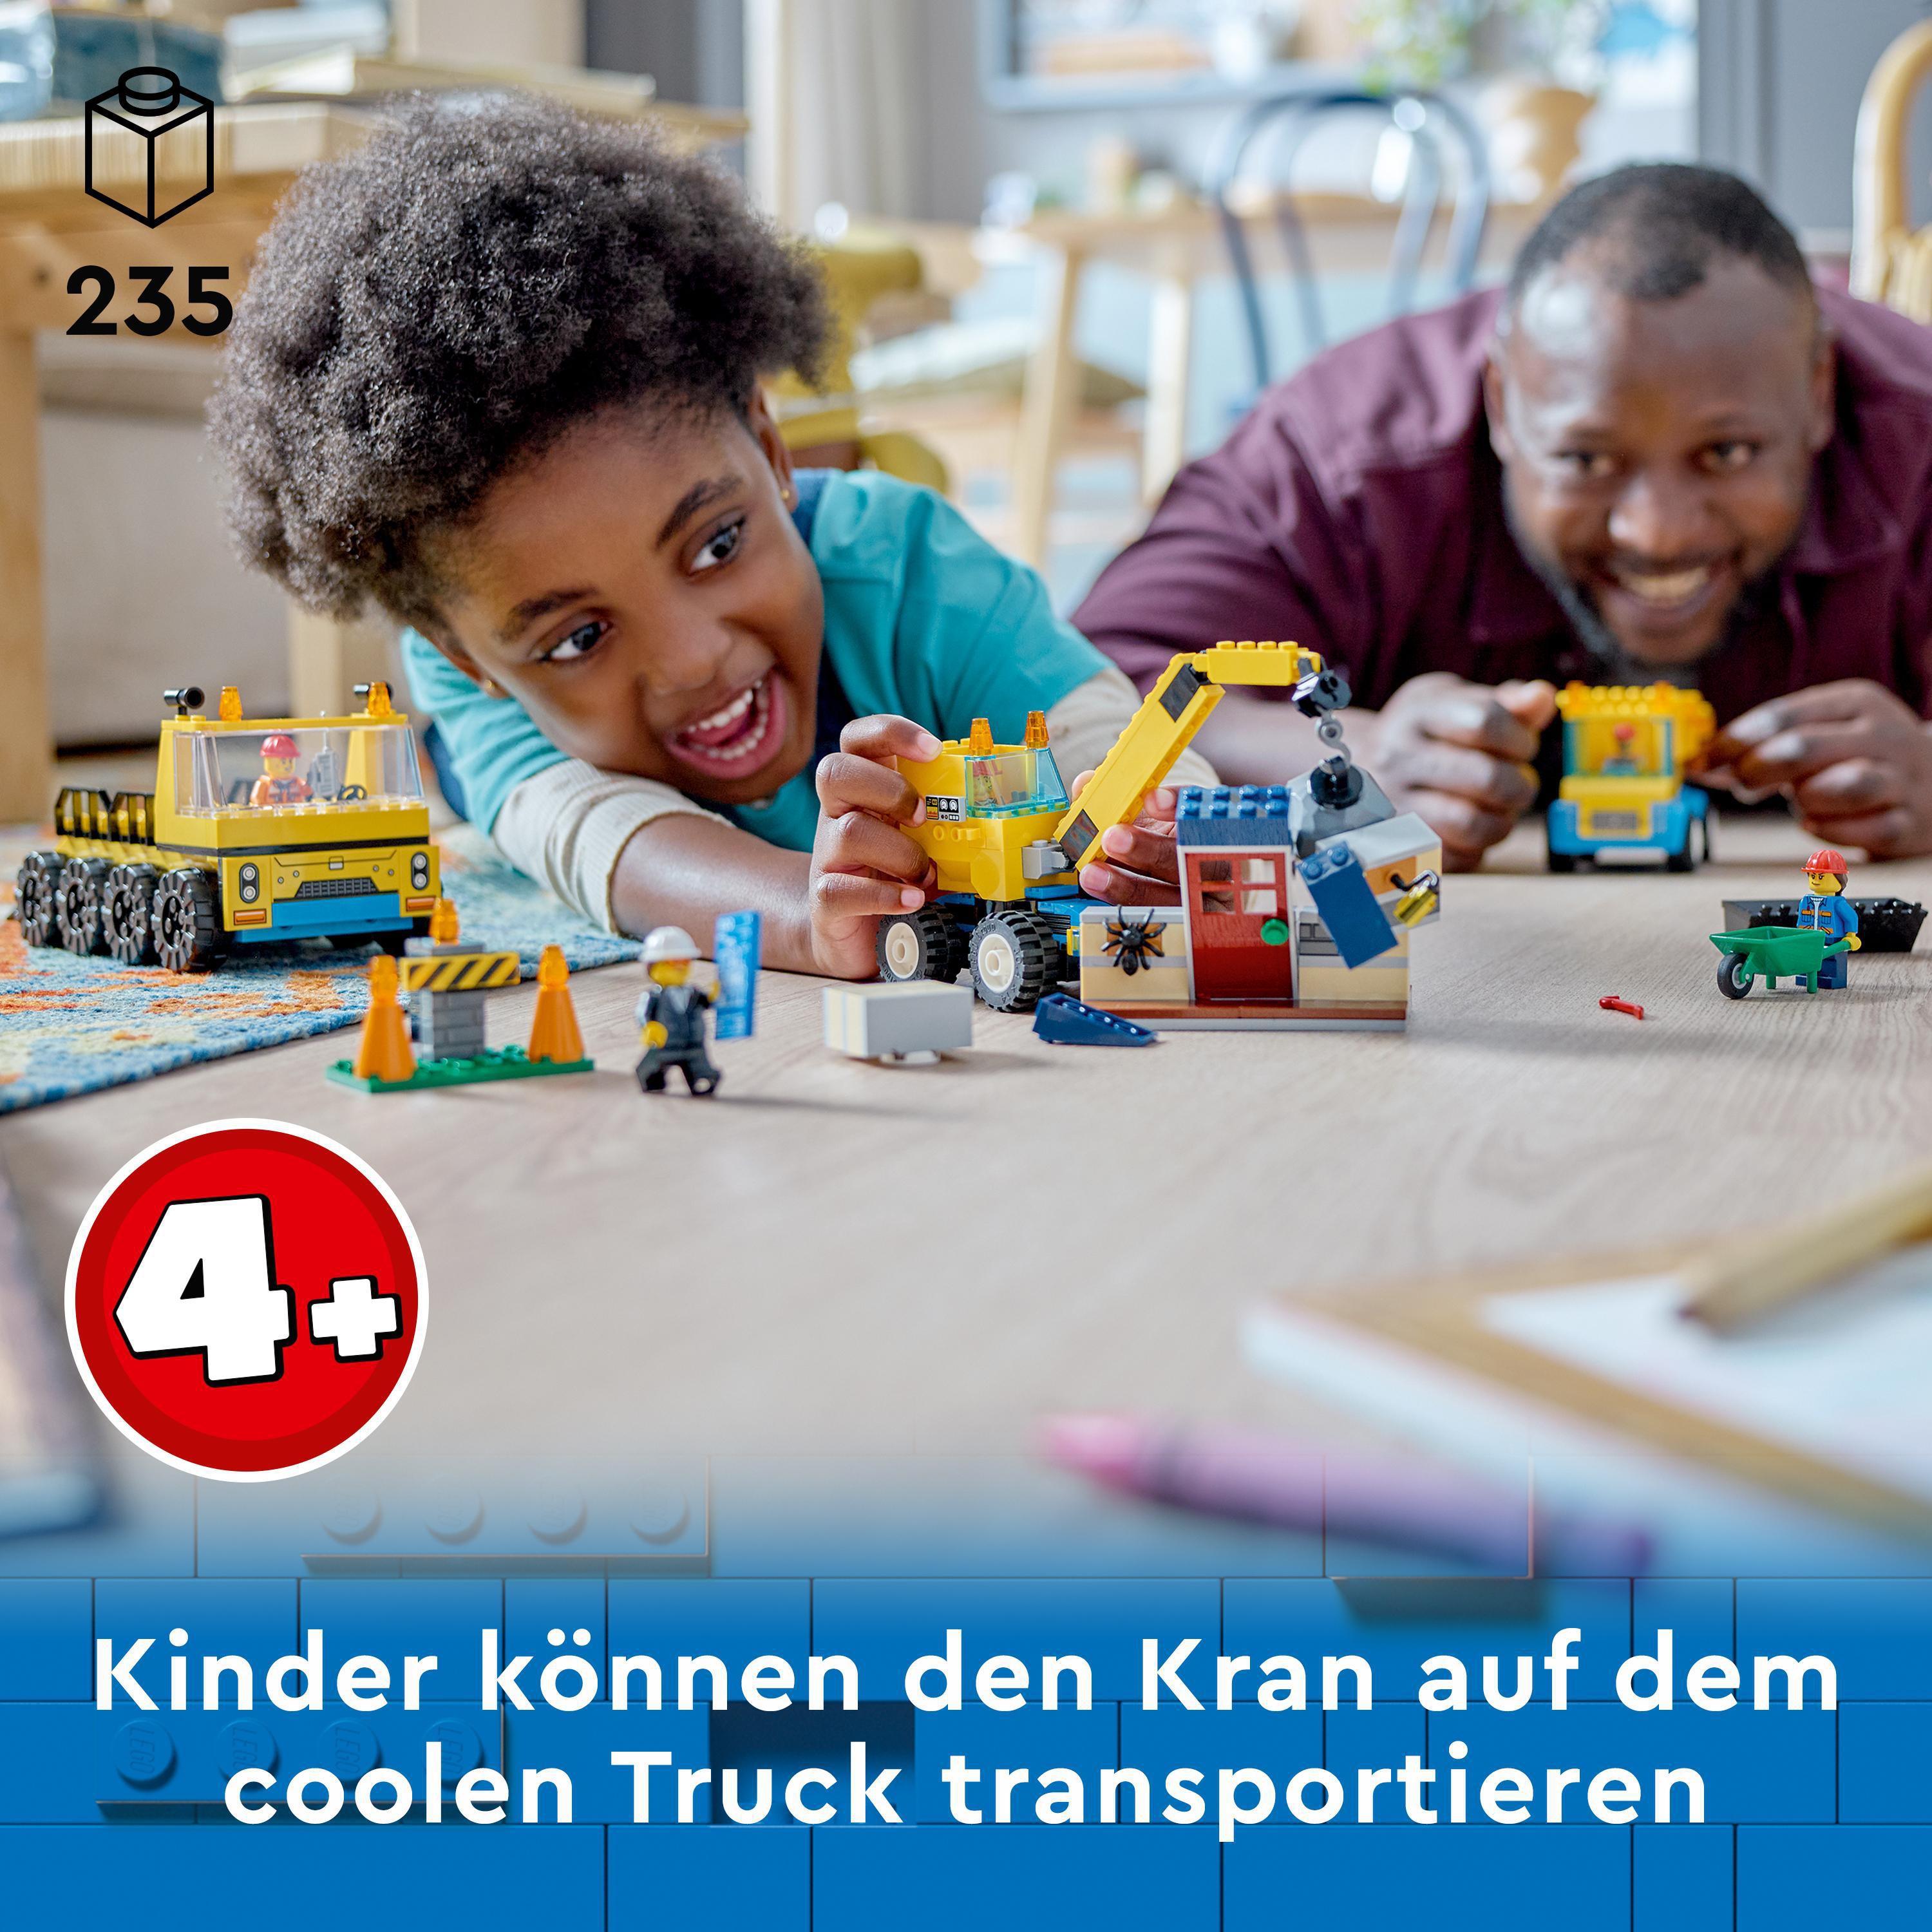 Baufahrzeuge City LEGO Mehrfarbig Bausatz, Kran 60391 und Abrissbirne mit